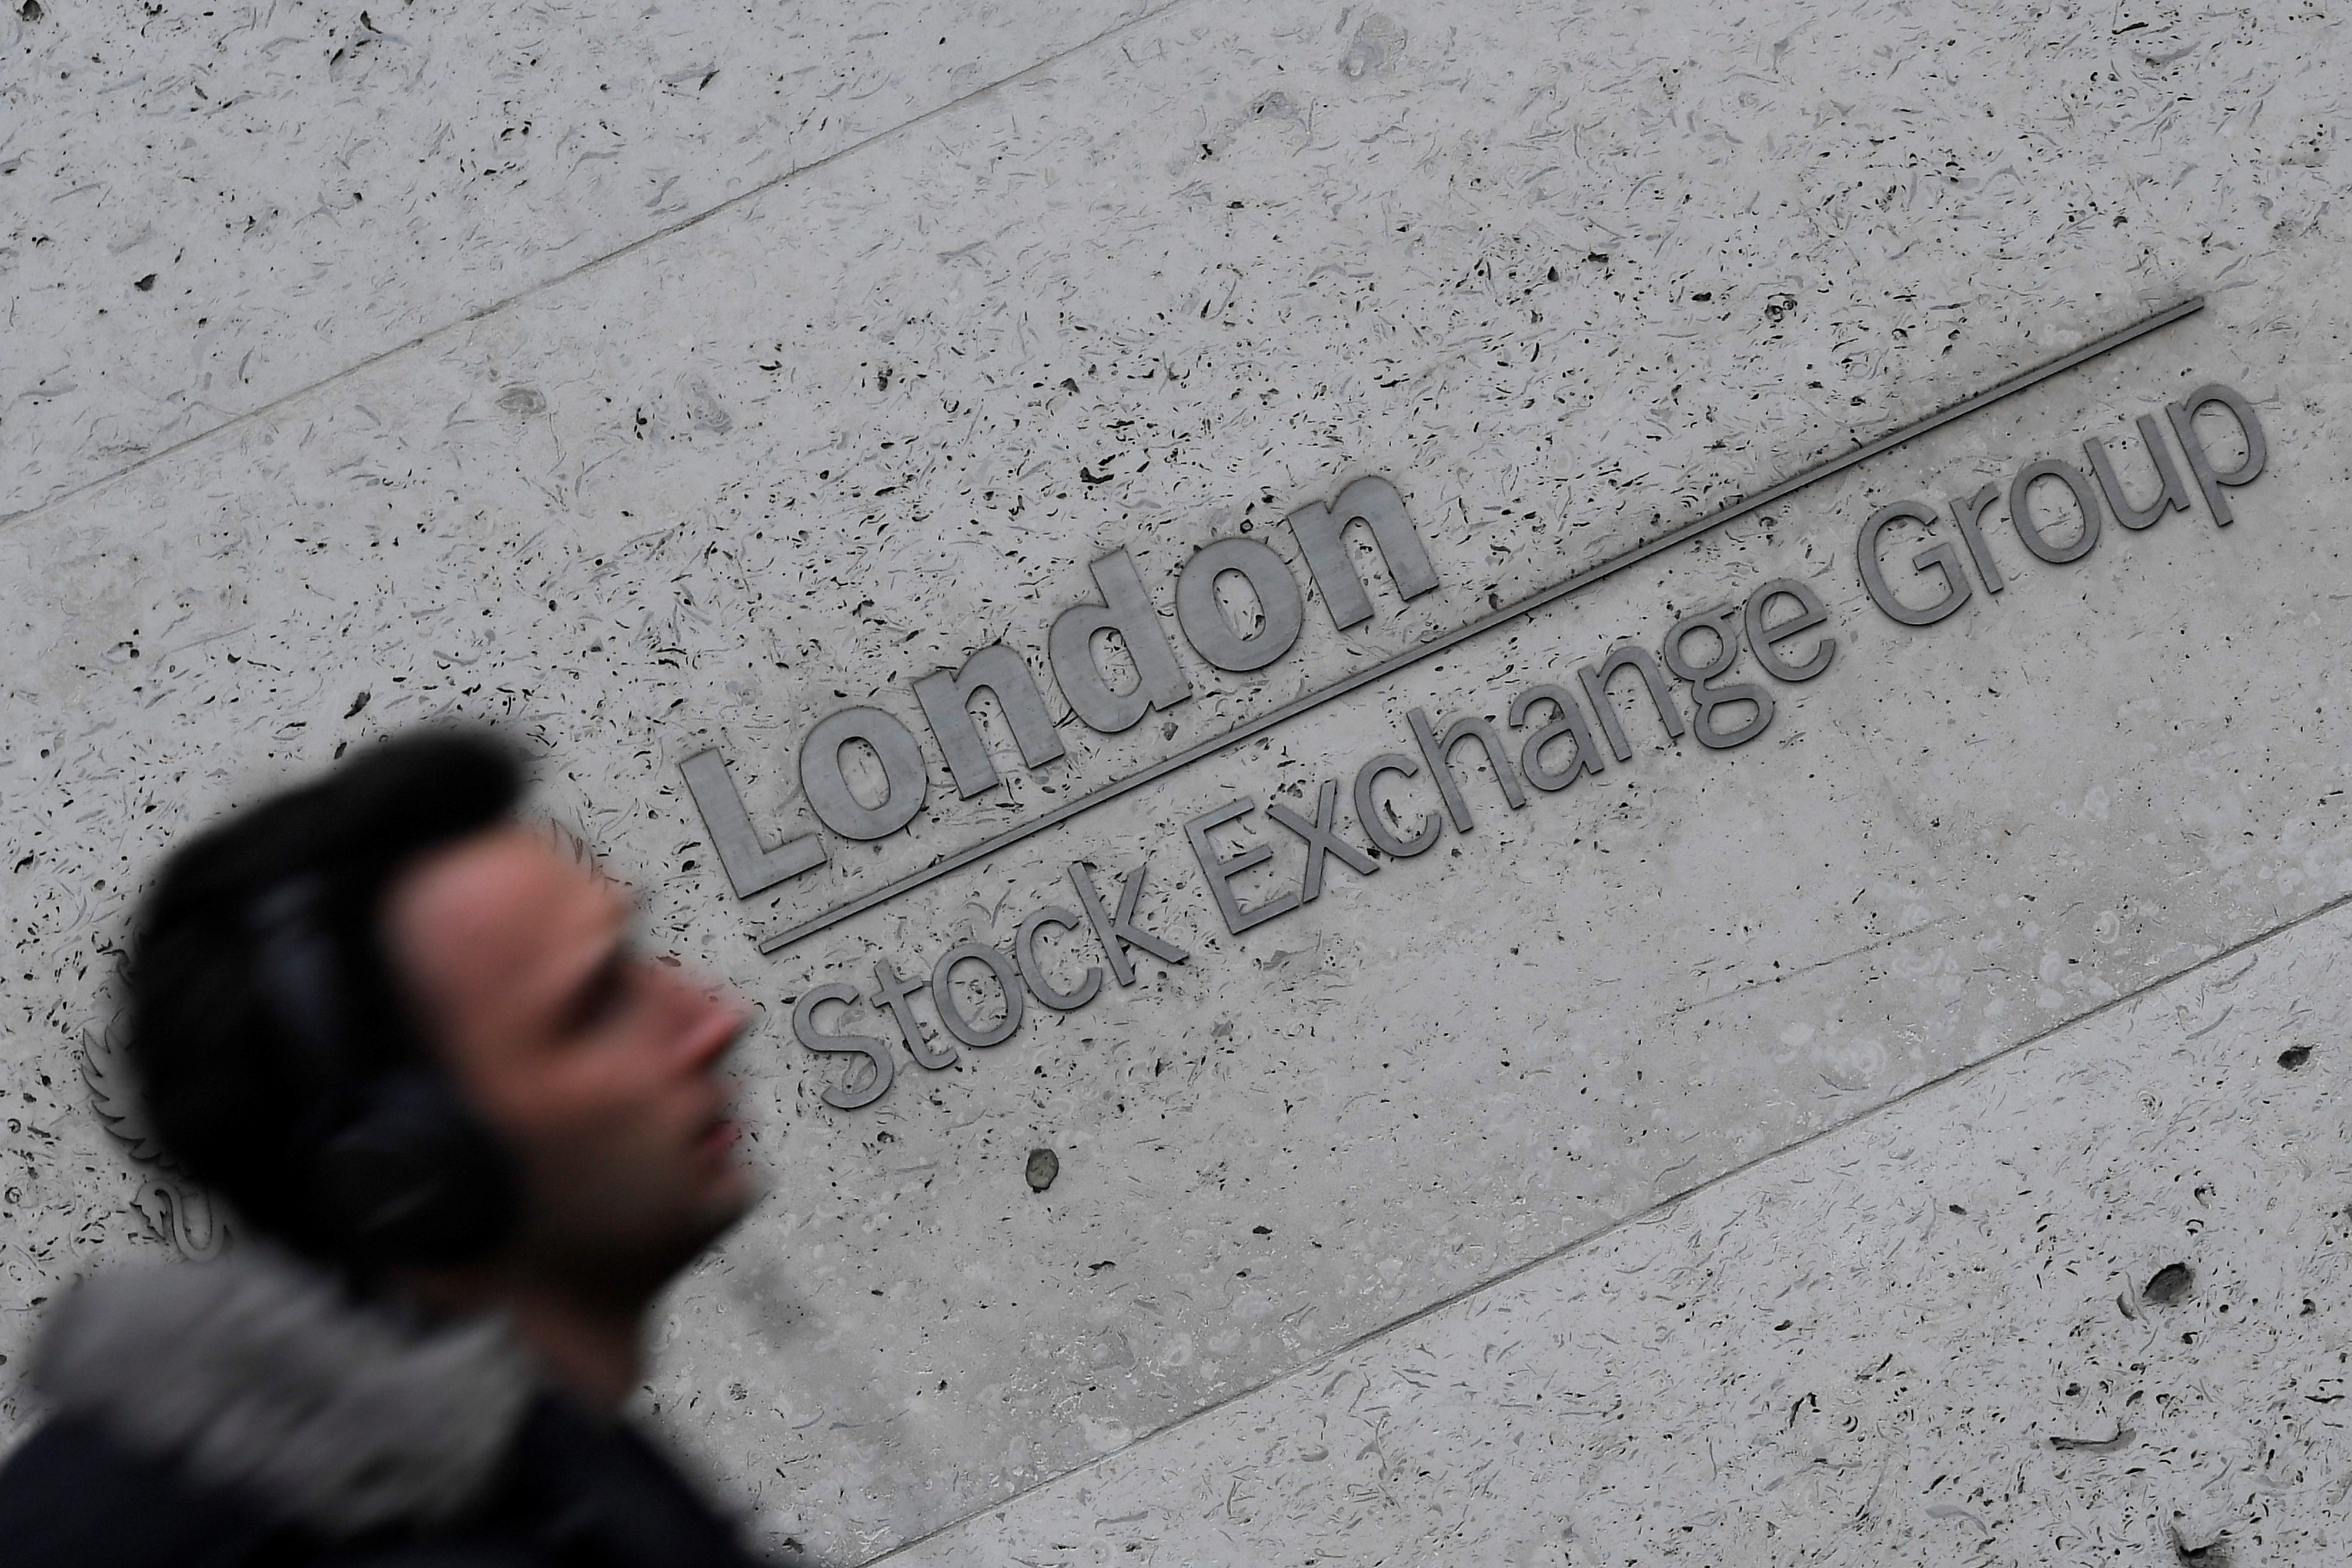 La Bolsa de Londres lamenta el fallecimiento de Isabel II y se mantiene abierta hoy viernes